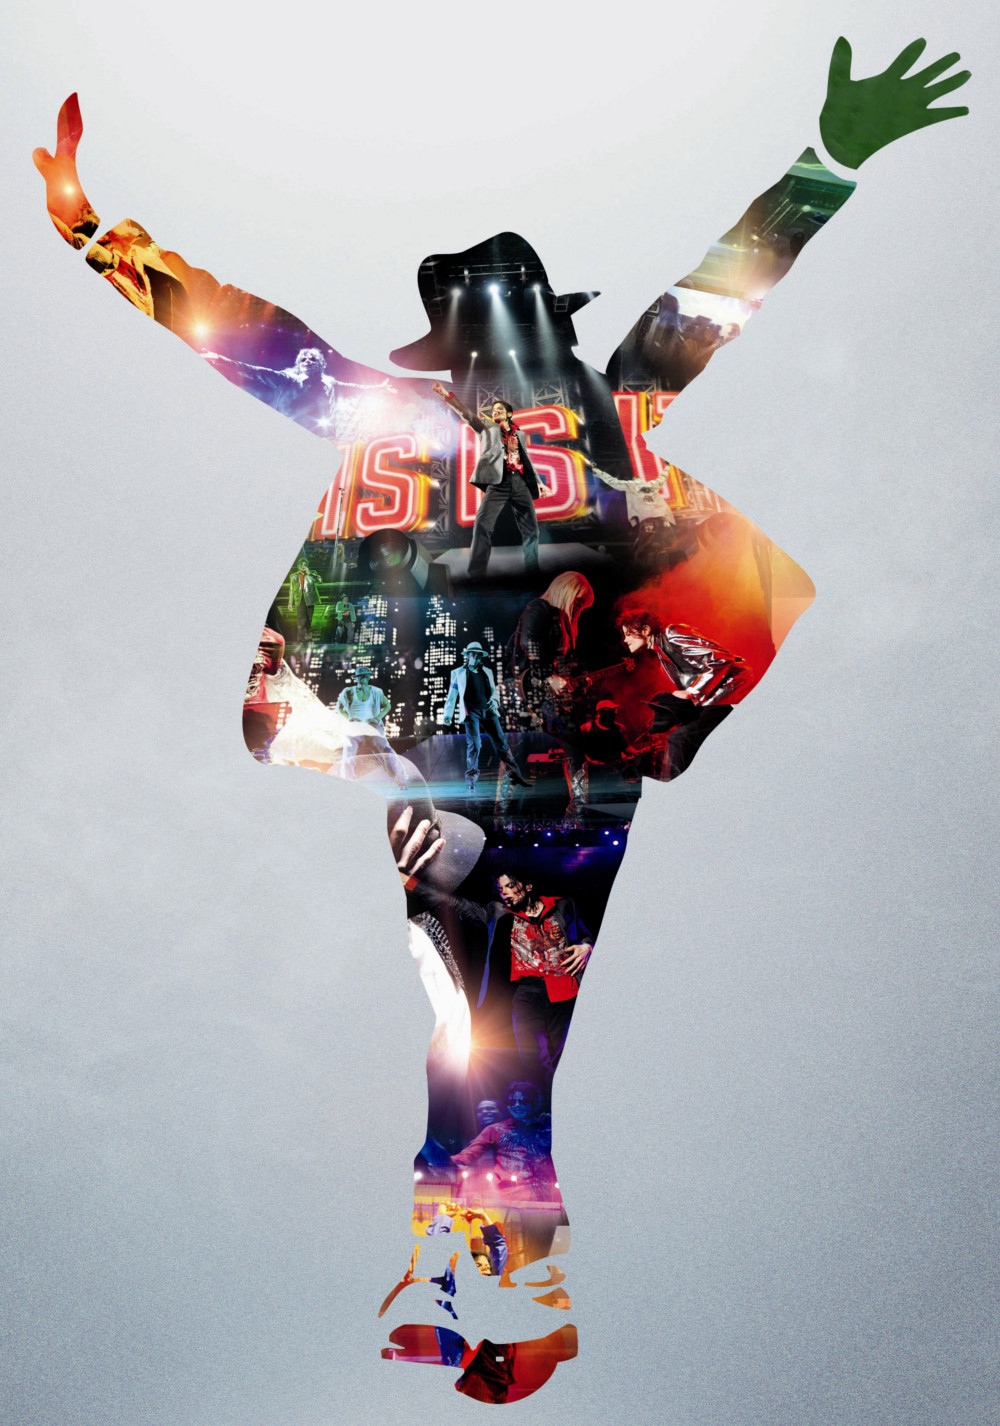 Michael Jackson: Đó Là Anh (This Is It) [2009]